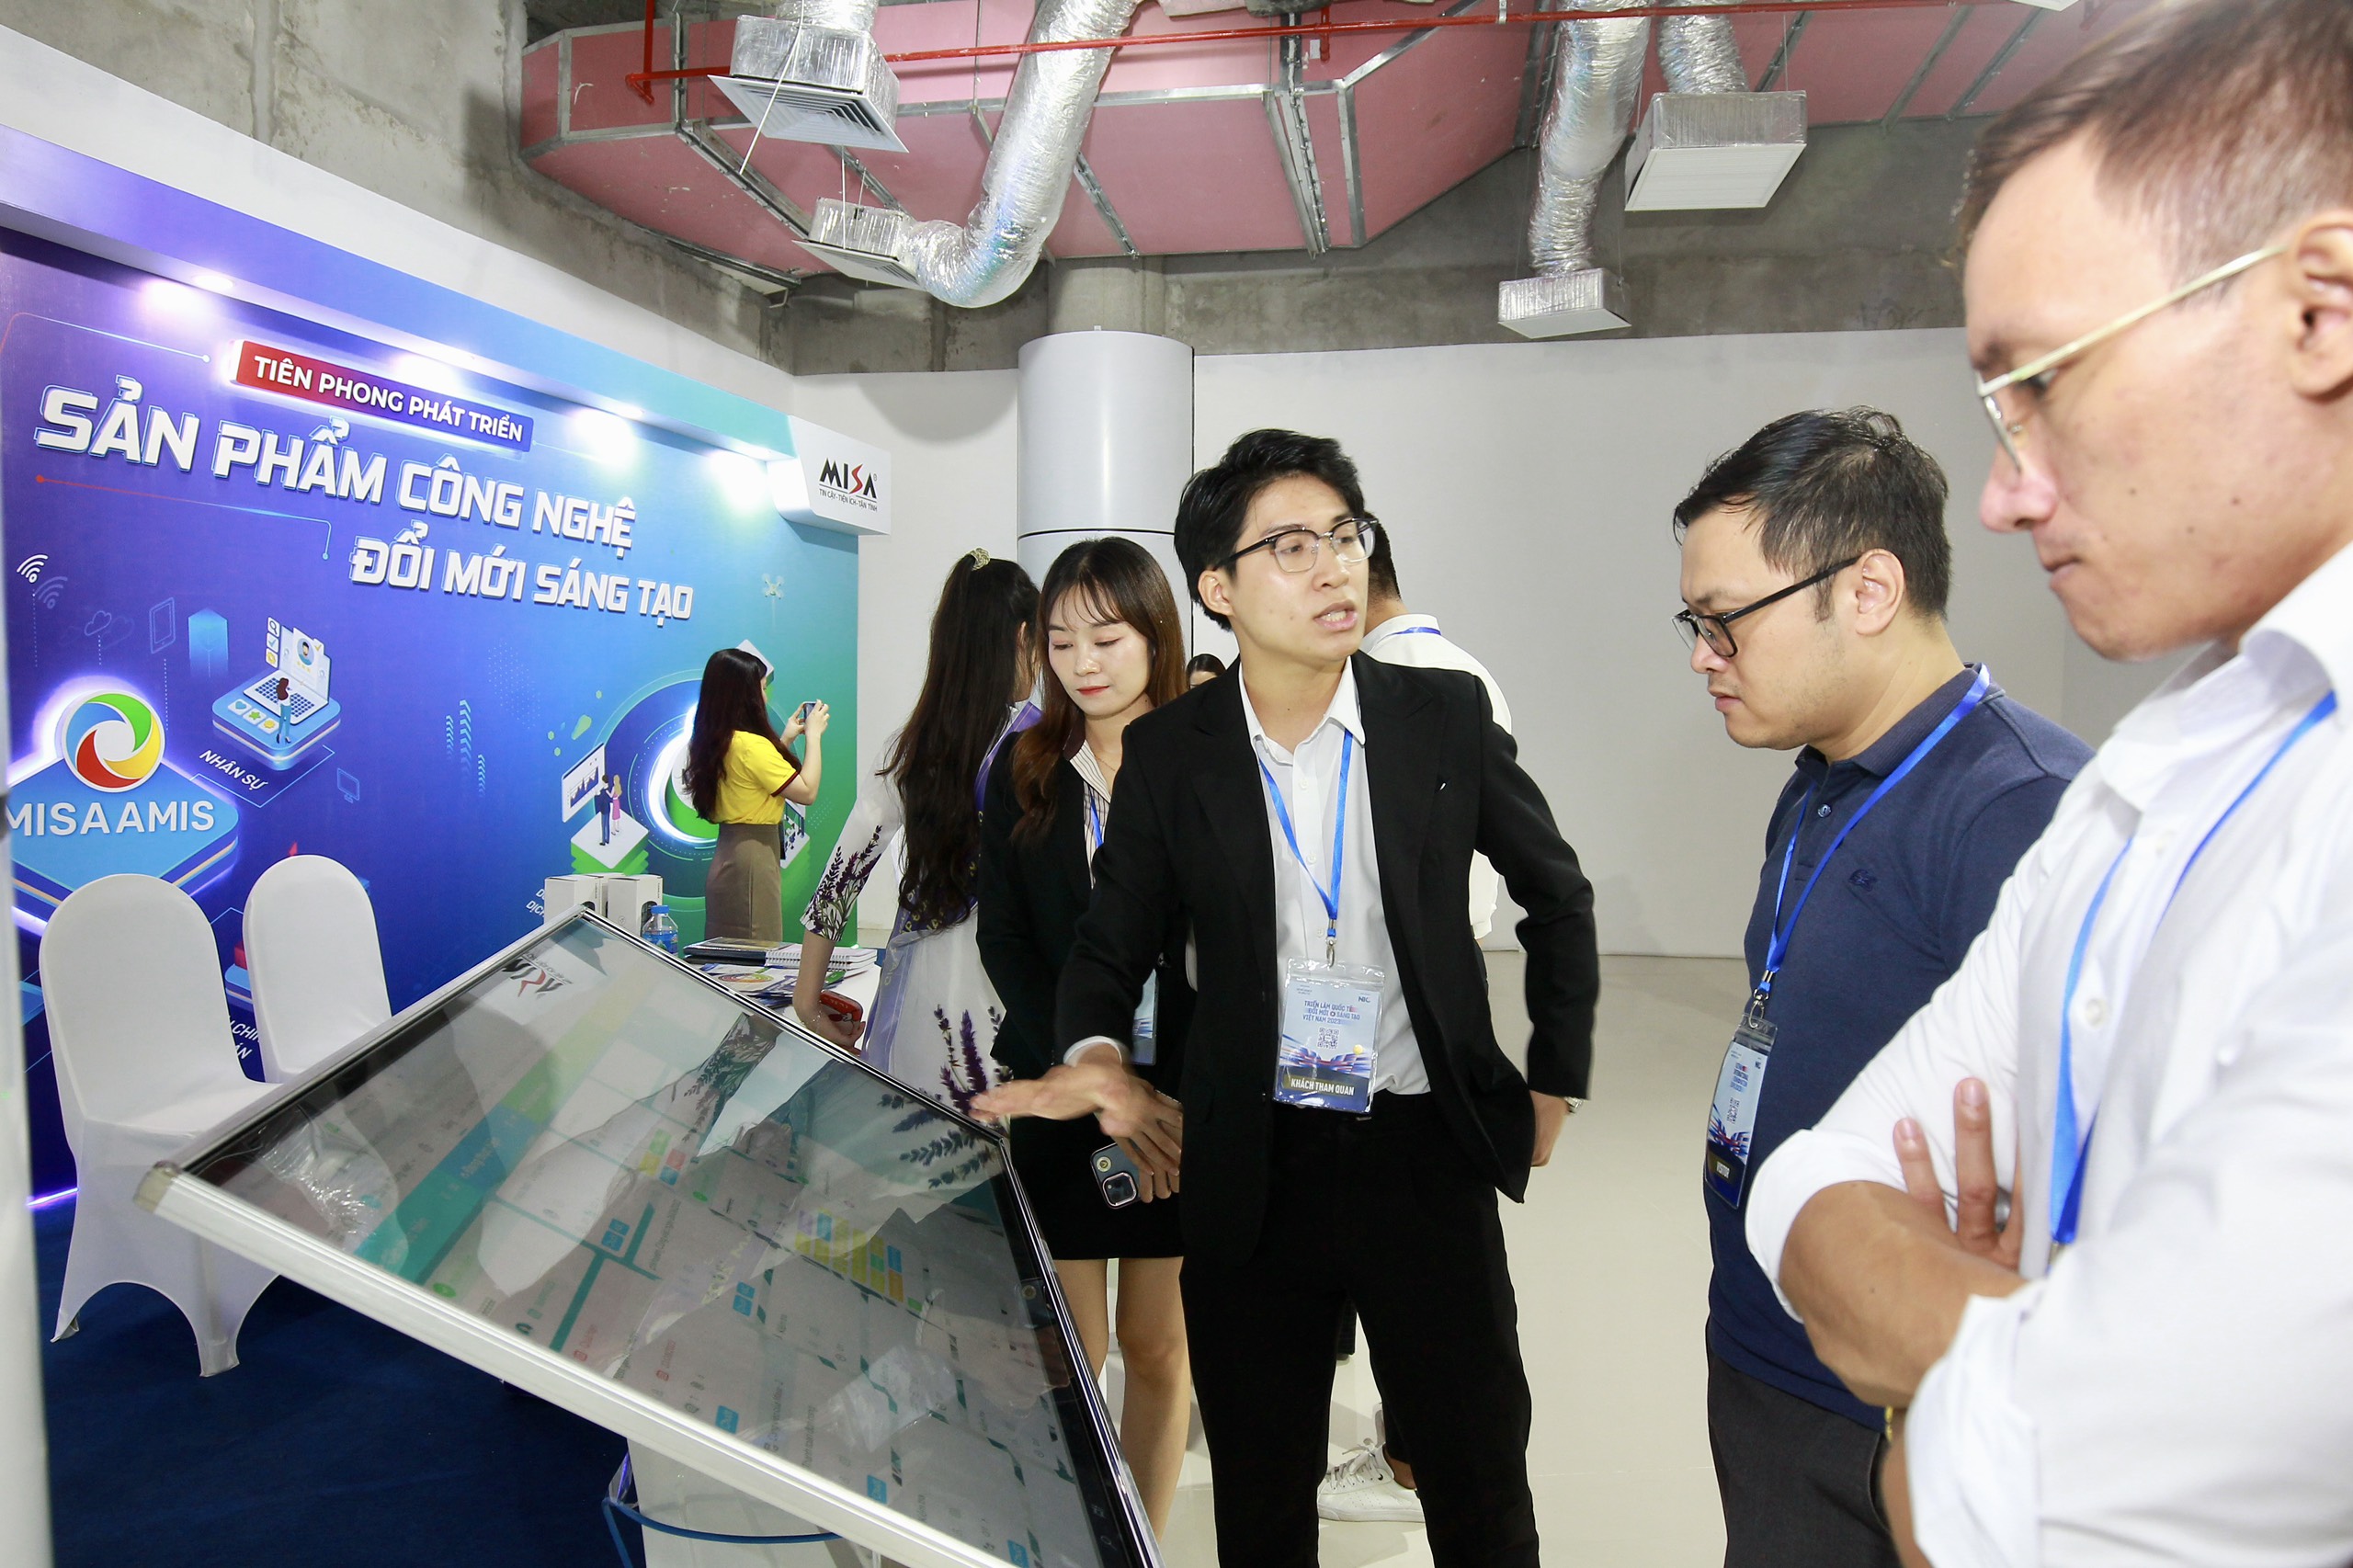 Nhân dịp khánh thành Trung tâm Đổi mới sáng tạo Quốc gia tại Hòa Lạc, ngay tại NIC Cơ sở Hòa Lạc, triễn lãm diễn ra trong 5 ngày (từ 28/10 đến 1/11), VIIE 2023 được tổ chức với quy mô mang tầm quốc tế.. Đến với VIIE 2023, khách tham dự trực tiếp được chiêm ngưỡng bức tranh công nghệ tương lai đến từ các doanh nghiệp công nghệ đổi mới sáng tạo hàng đầu trong và ngoài nước.